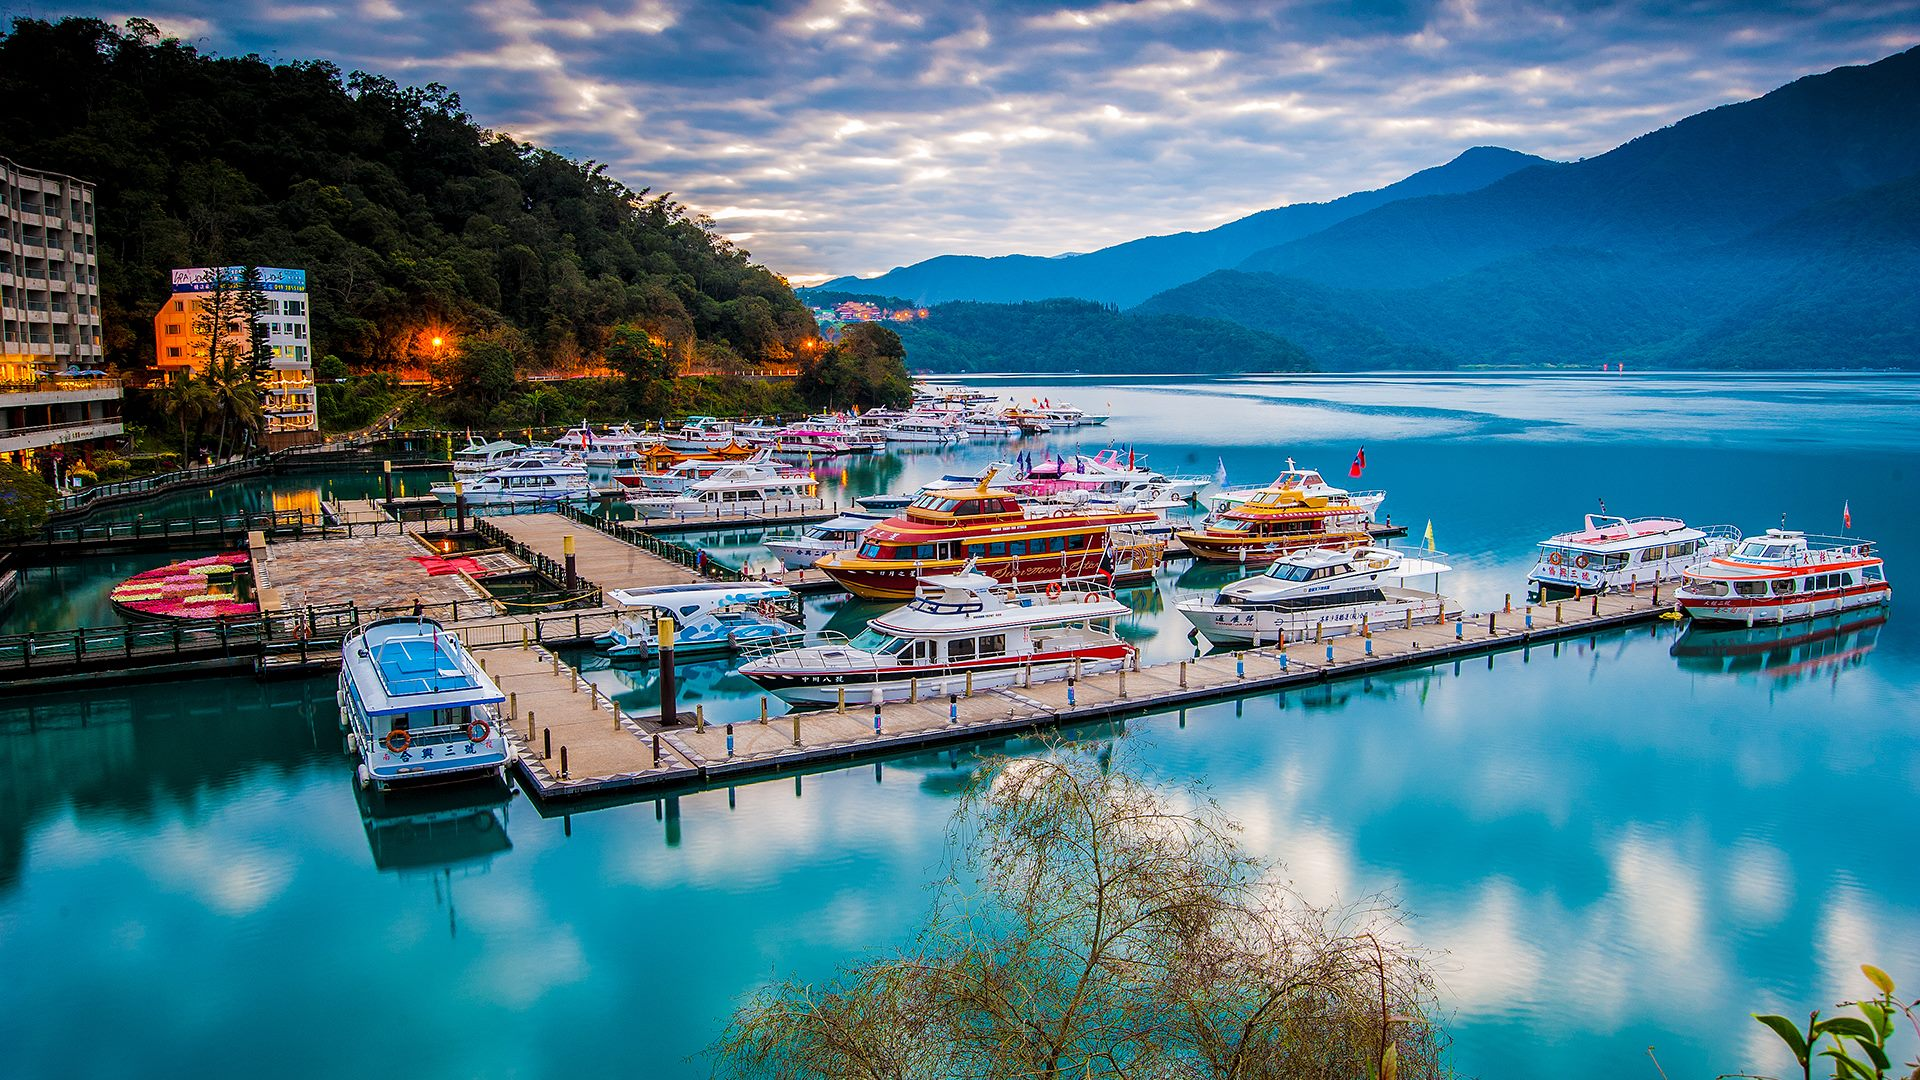 Du lịch Đài loan khám phá Hồ Nhật Nguyệt - Nơi tĩnh lặng đẹp như tranh vẽ | TOPTOUR